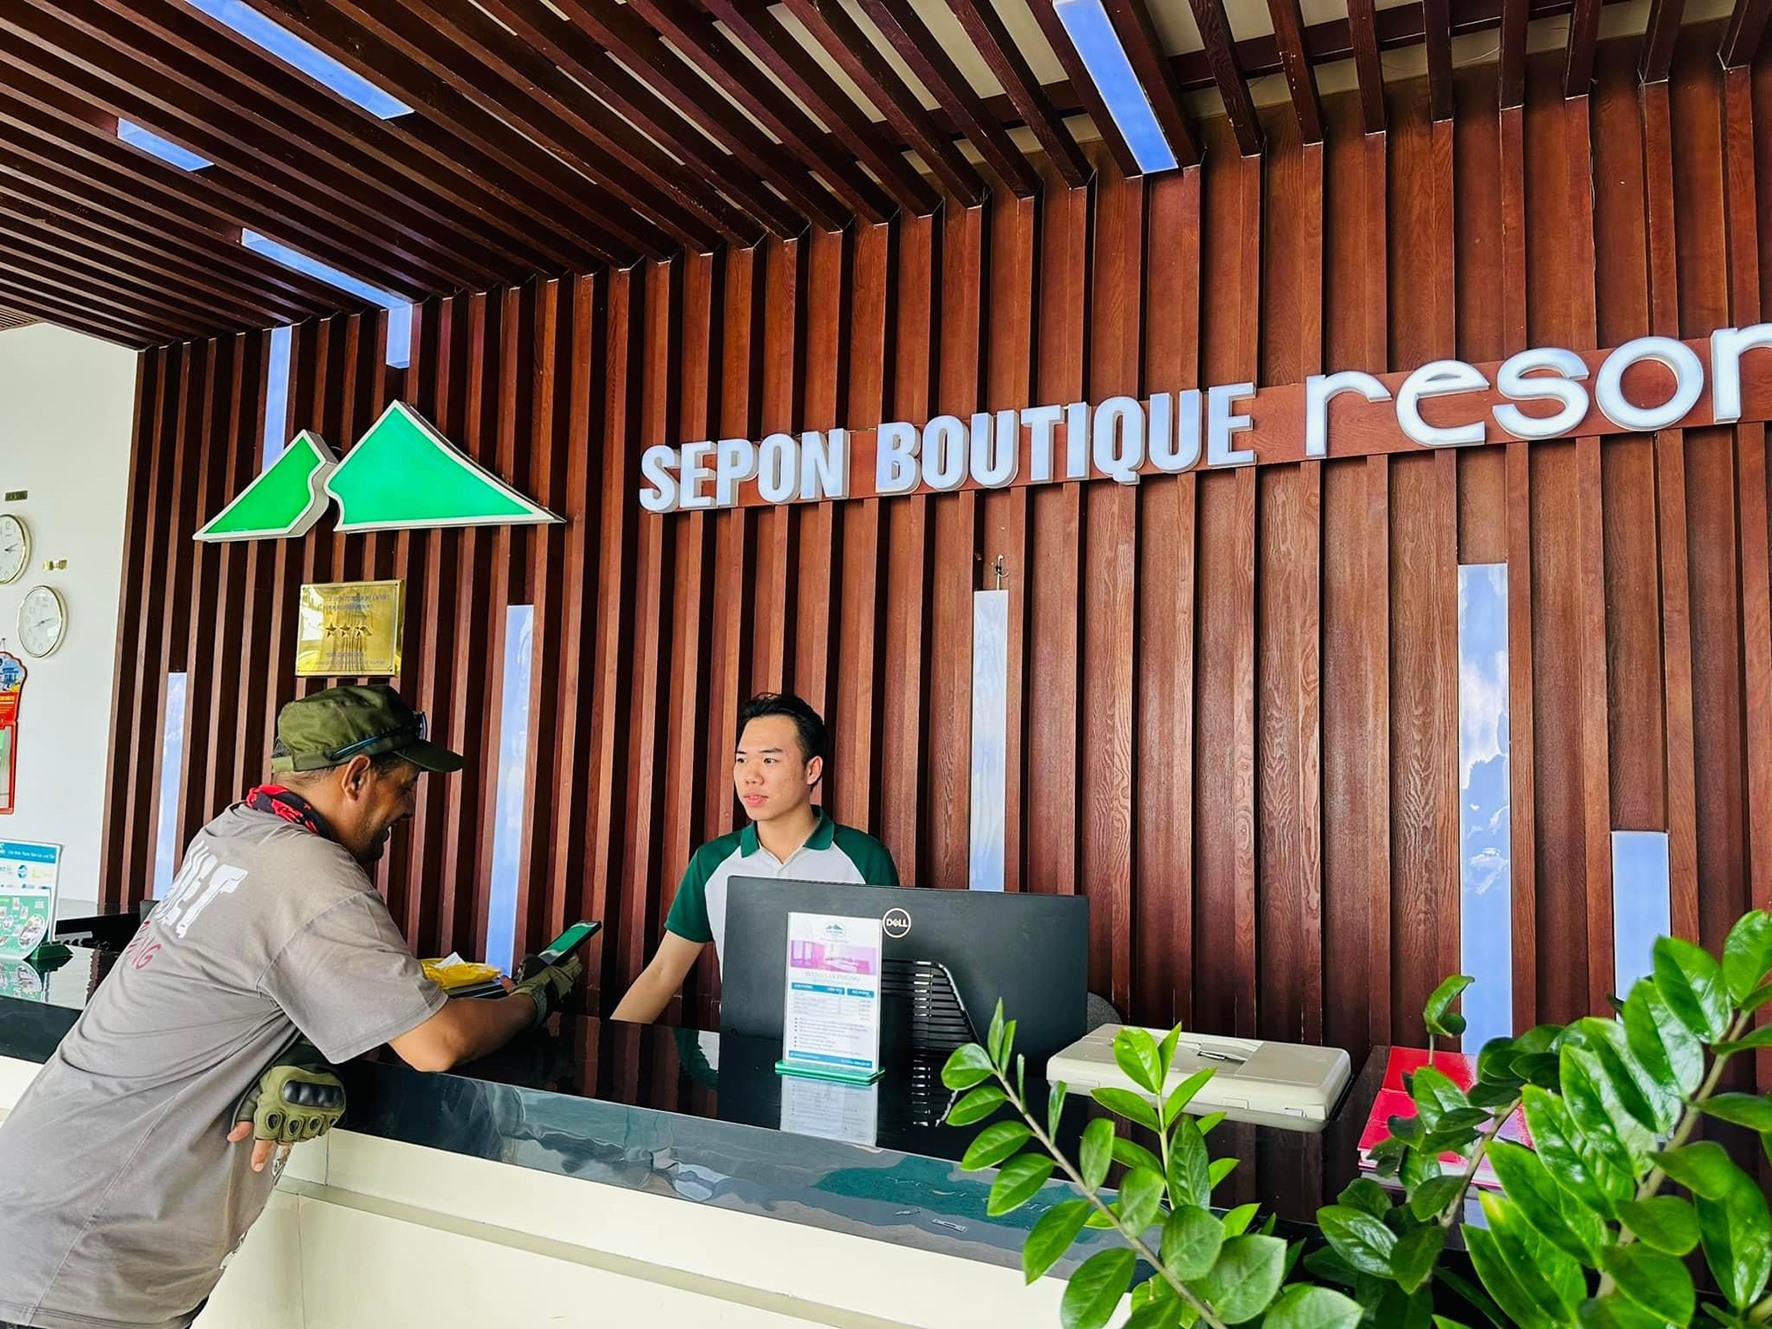 Nhân viên Sepon Boutique Resort tư vấn cho khách hàng về các dịch vụ lưu trú, lữ hành của doanh nghiệp -Ảnh: H.T